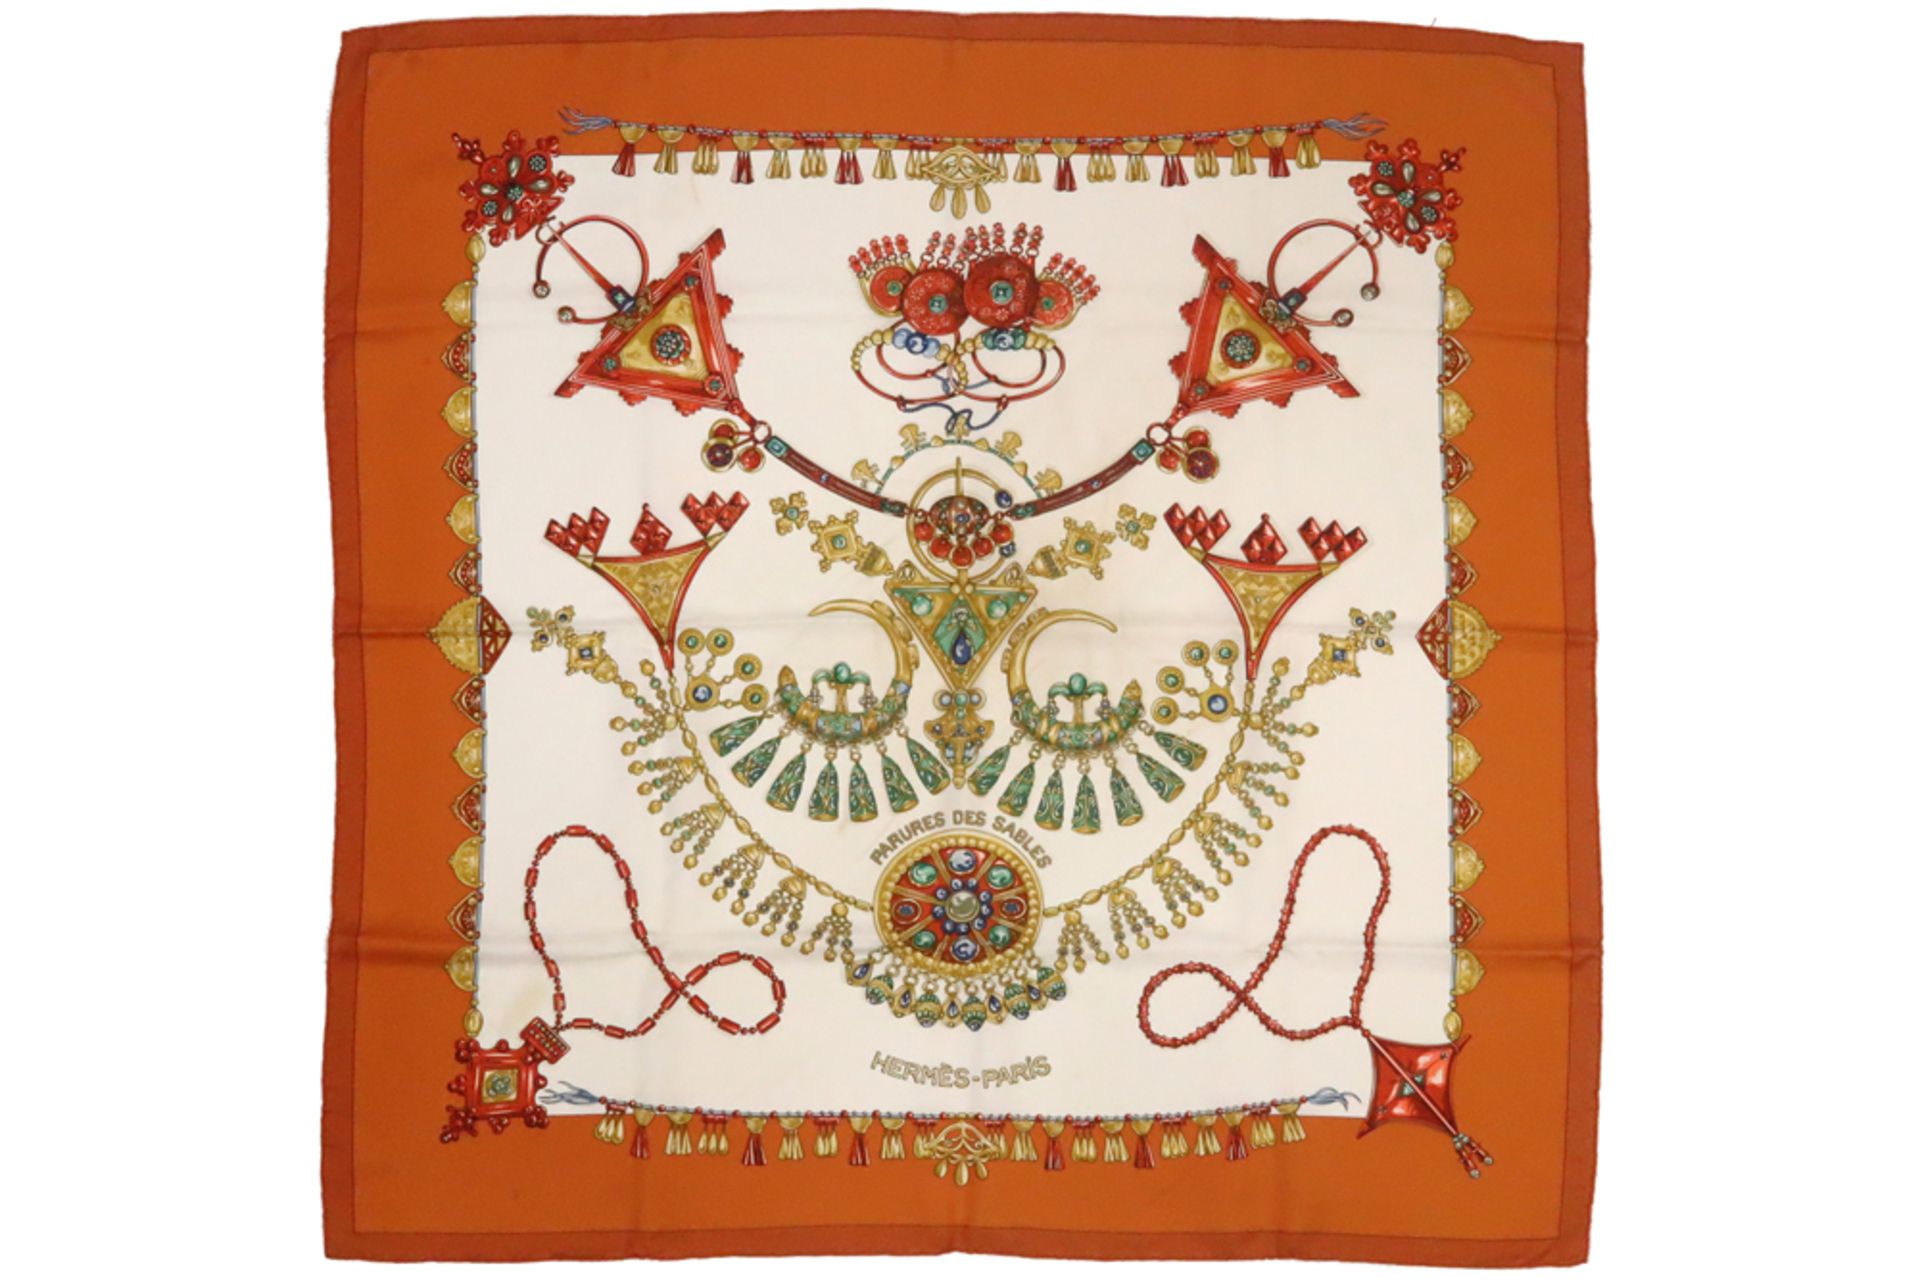 Hermès shawl with its box - marked || HERMÈS foulard in zijde (89 x 89) - met doos gemerkt